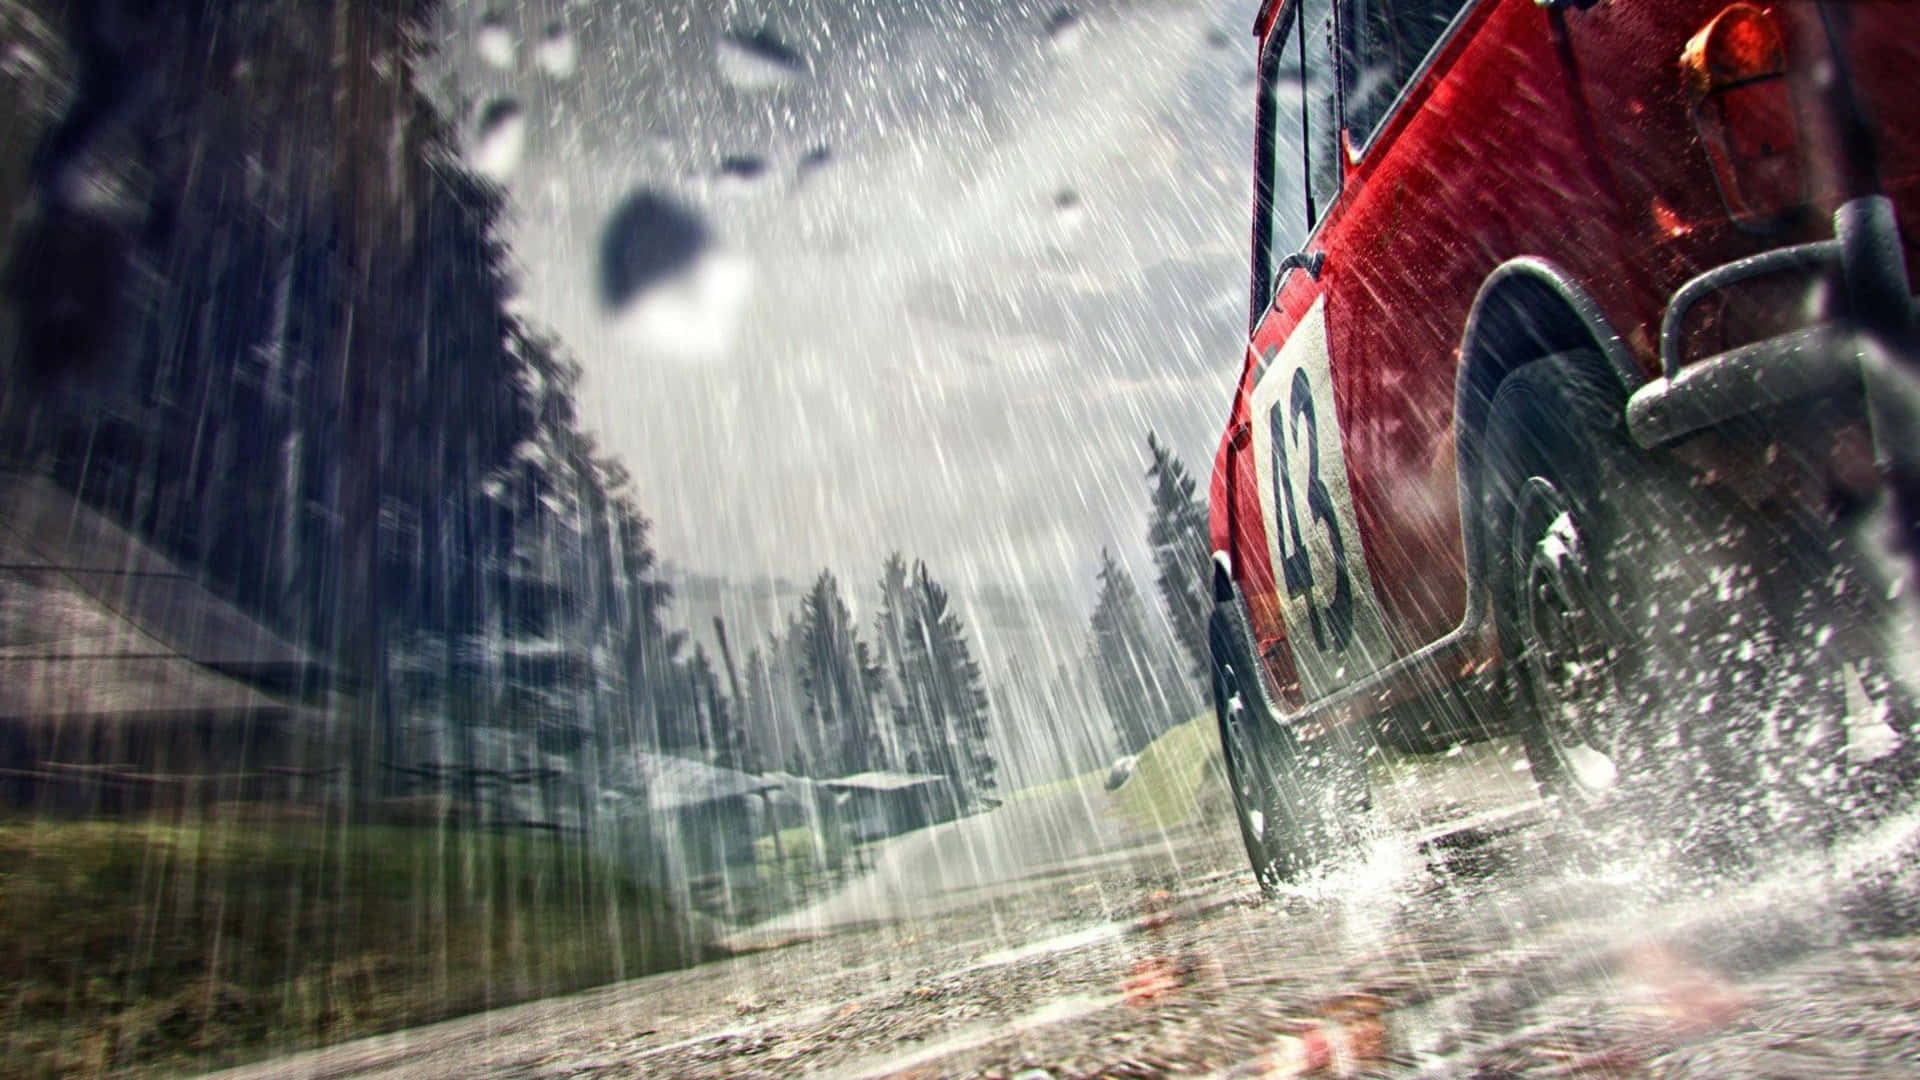 A Red Car Driving Through The Rain